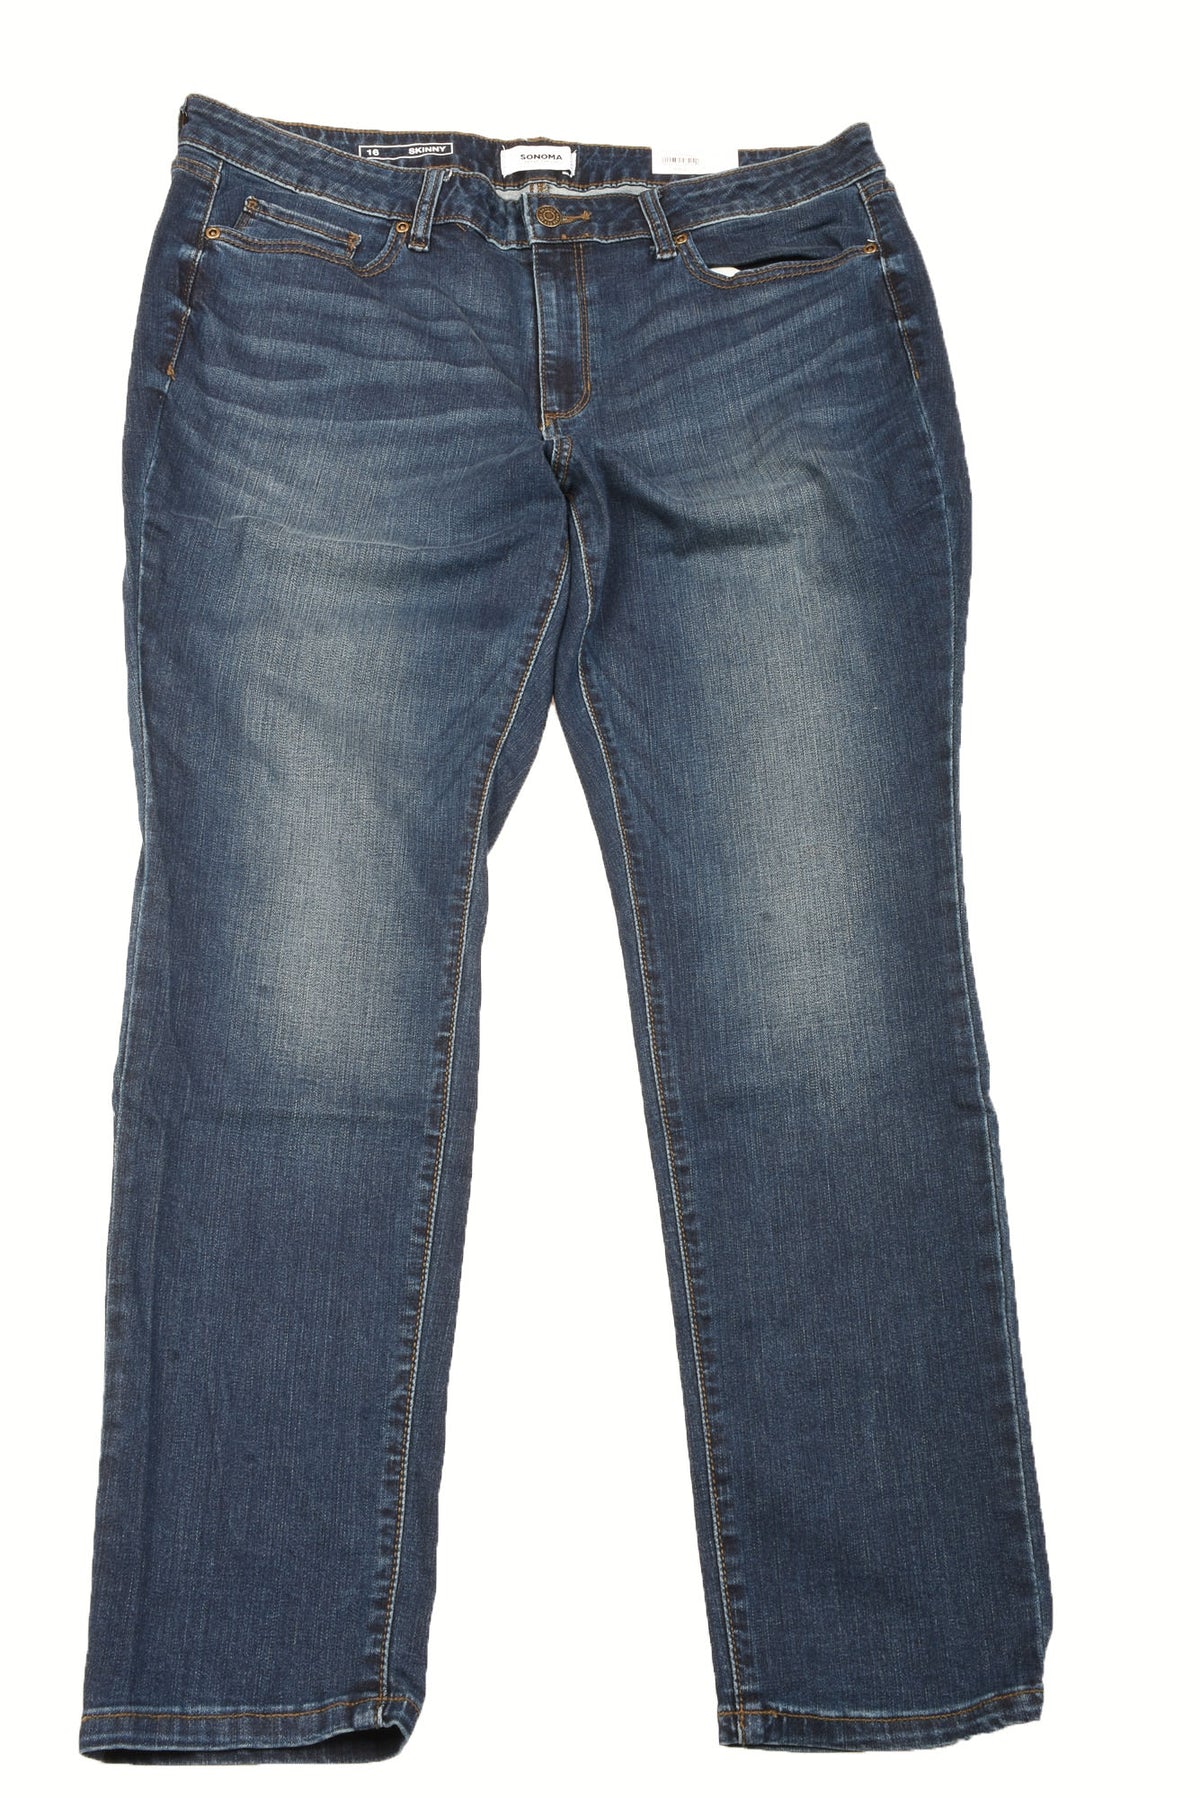 Sonoma Size 16 Women&#39;s Plus Jeans